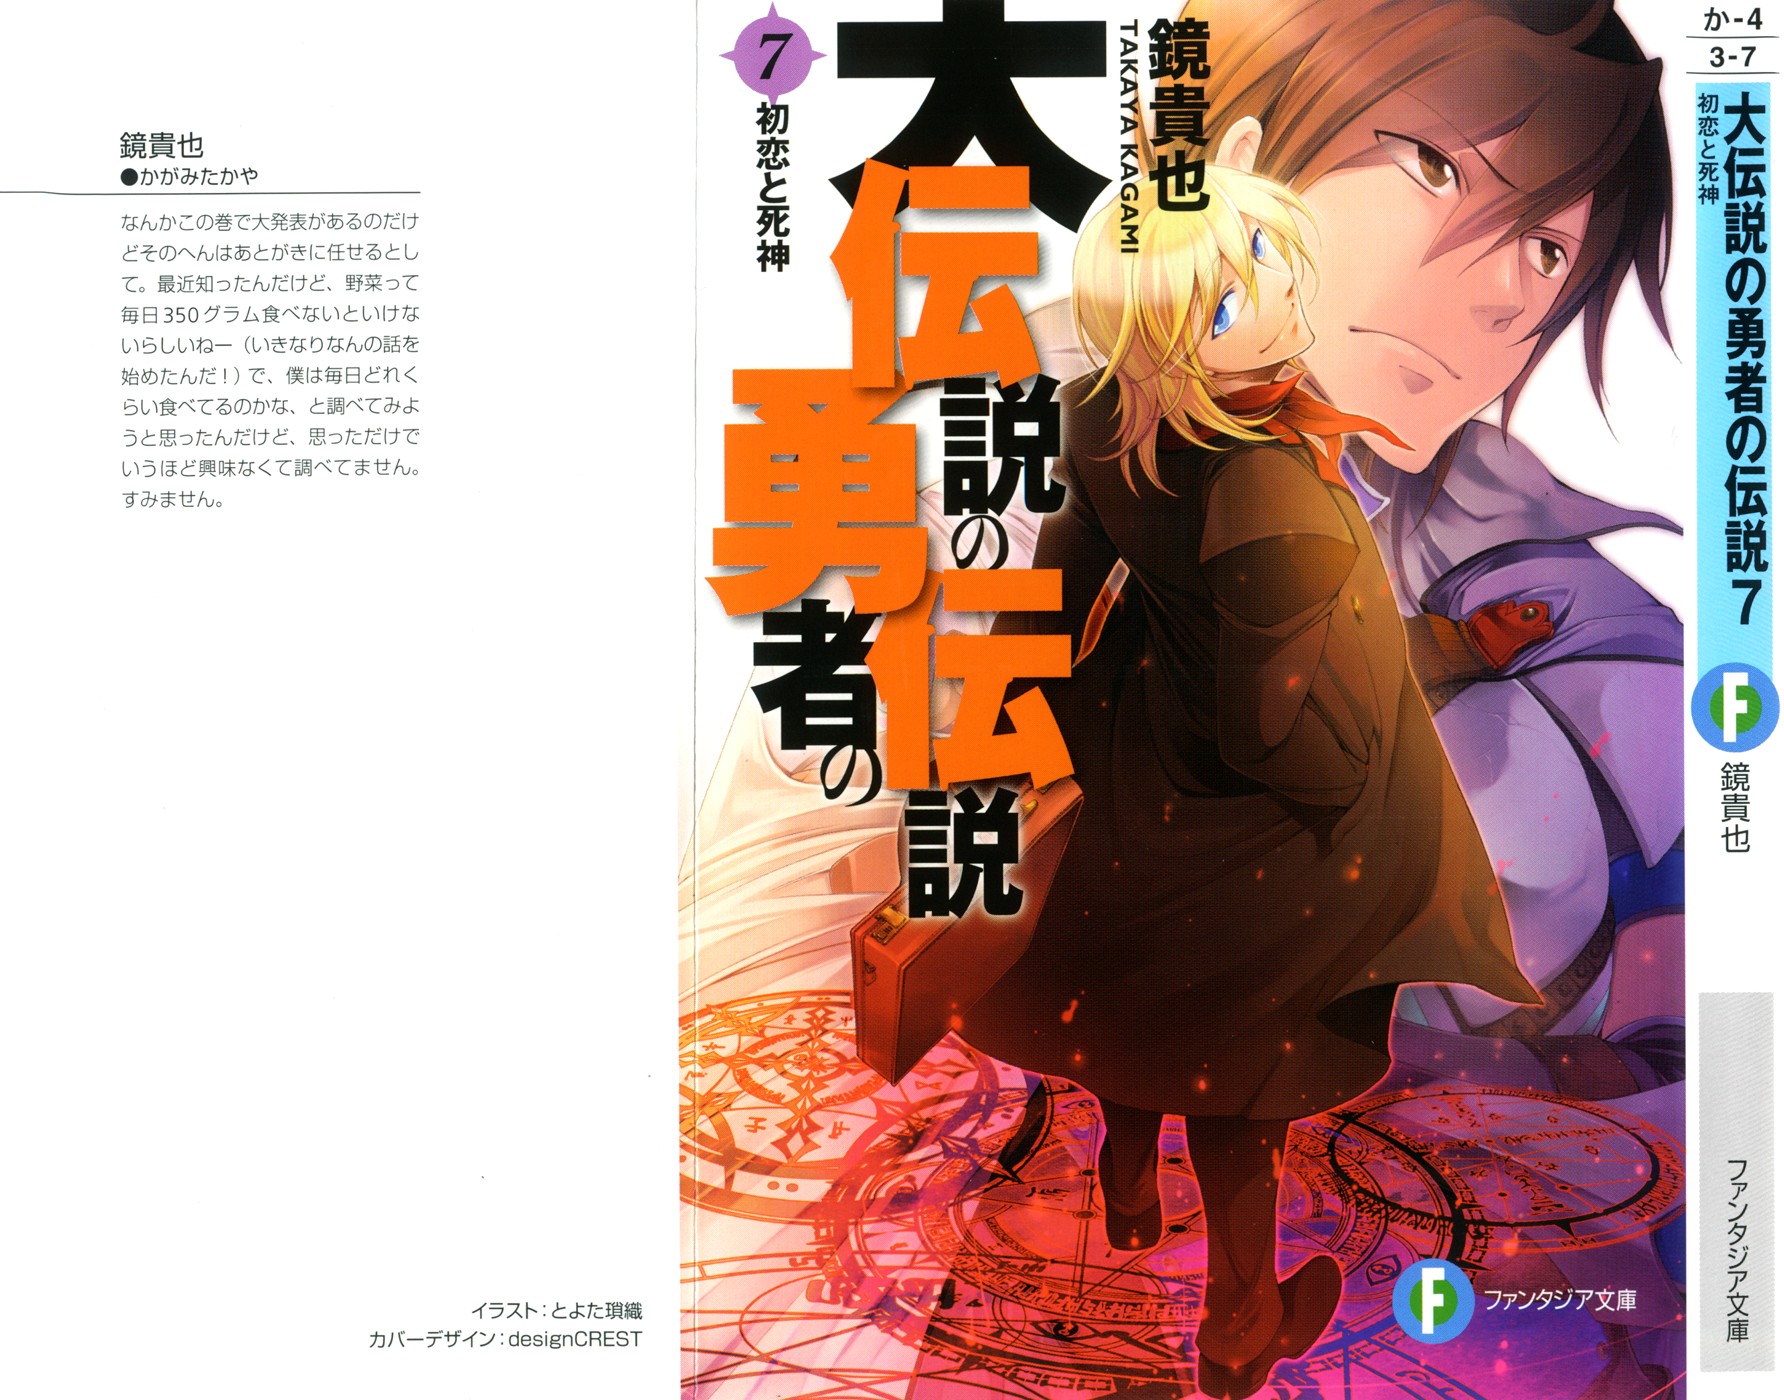 Toriaezu Densetsu no Yuusha no Densetsu - Novel Updates